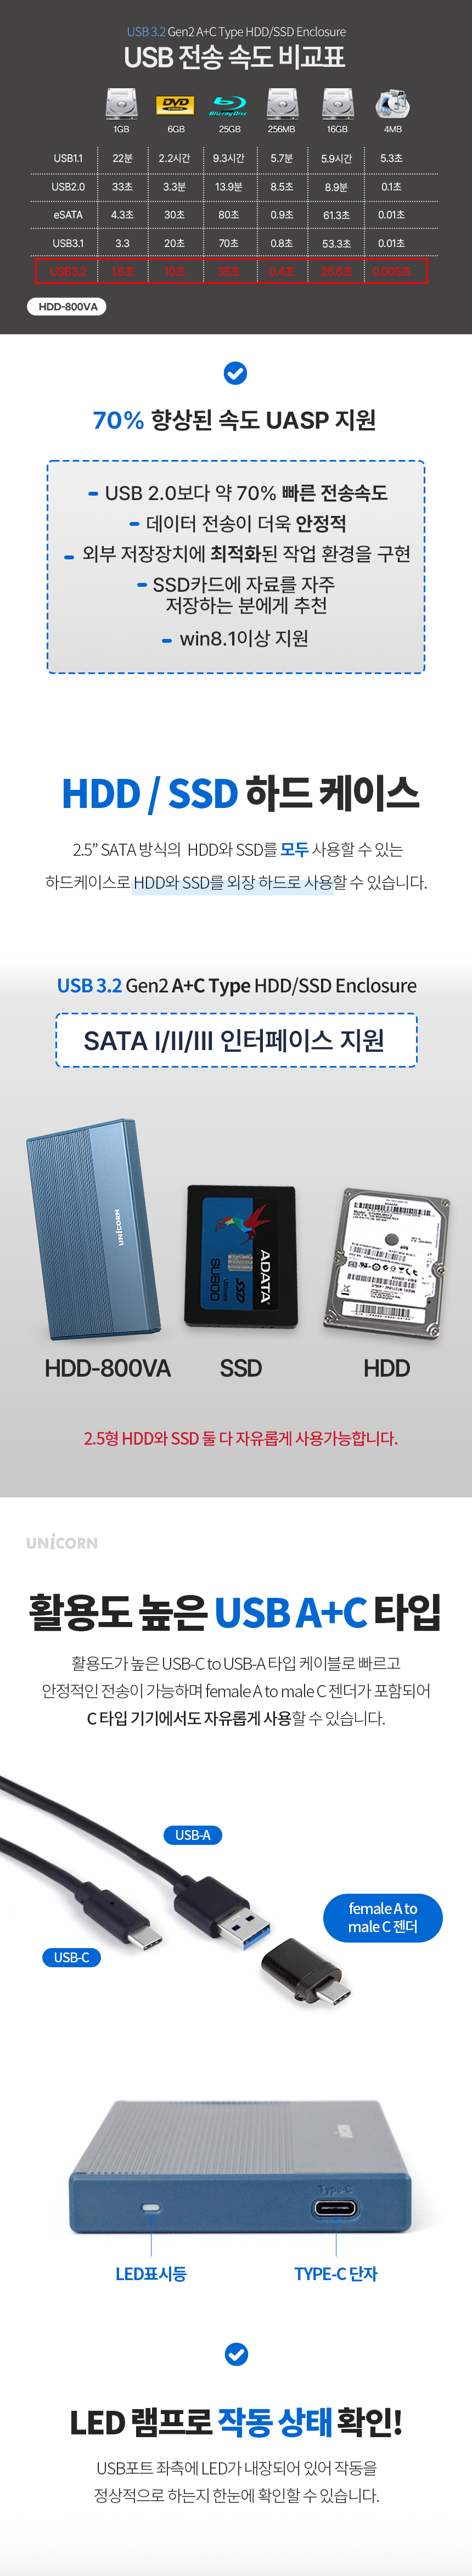 HDD-800VA-2.jpg